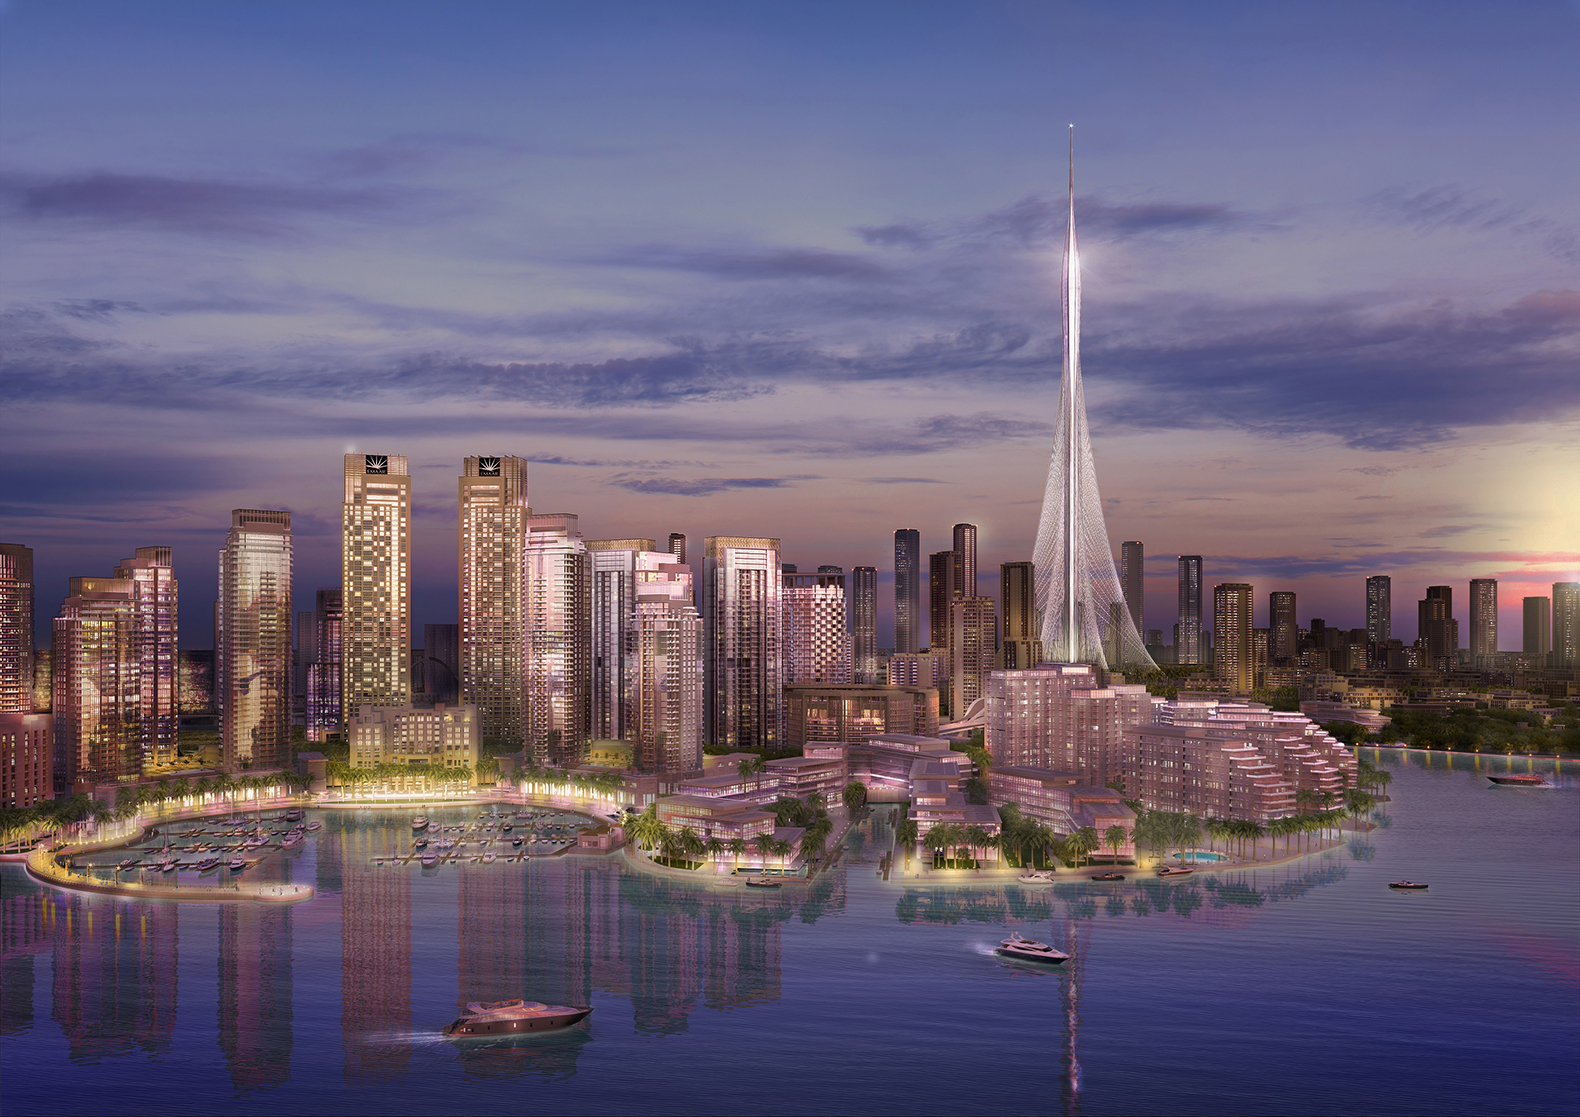 Najwyższy budynek powstanie... znowu w Dubaju? Dubaj mediarun dubai tower3